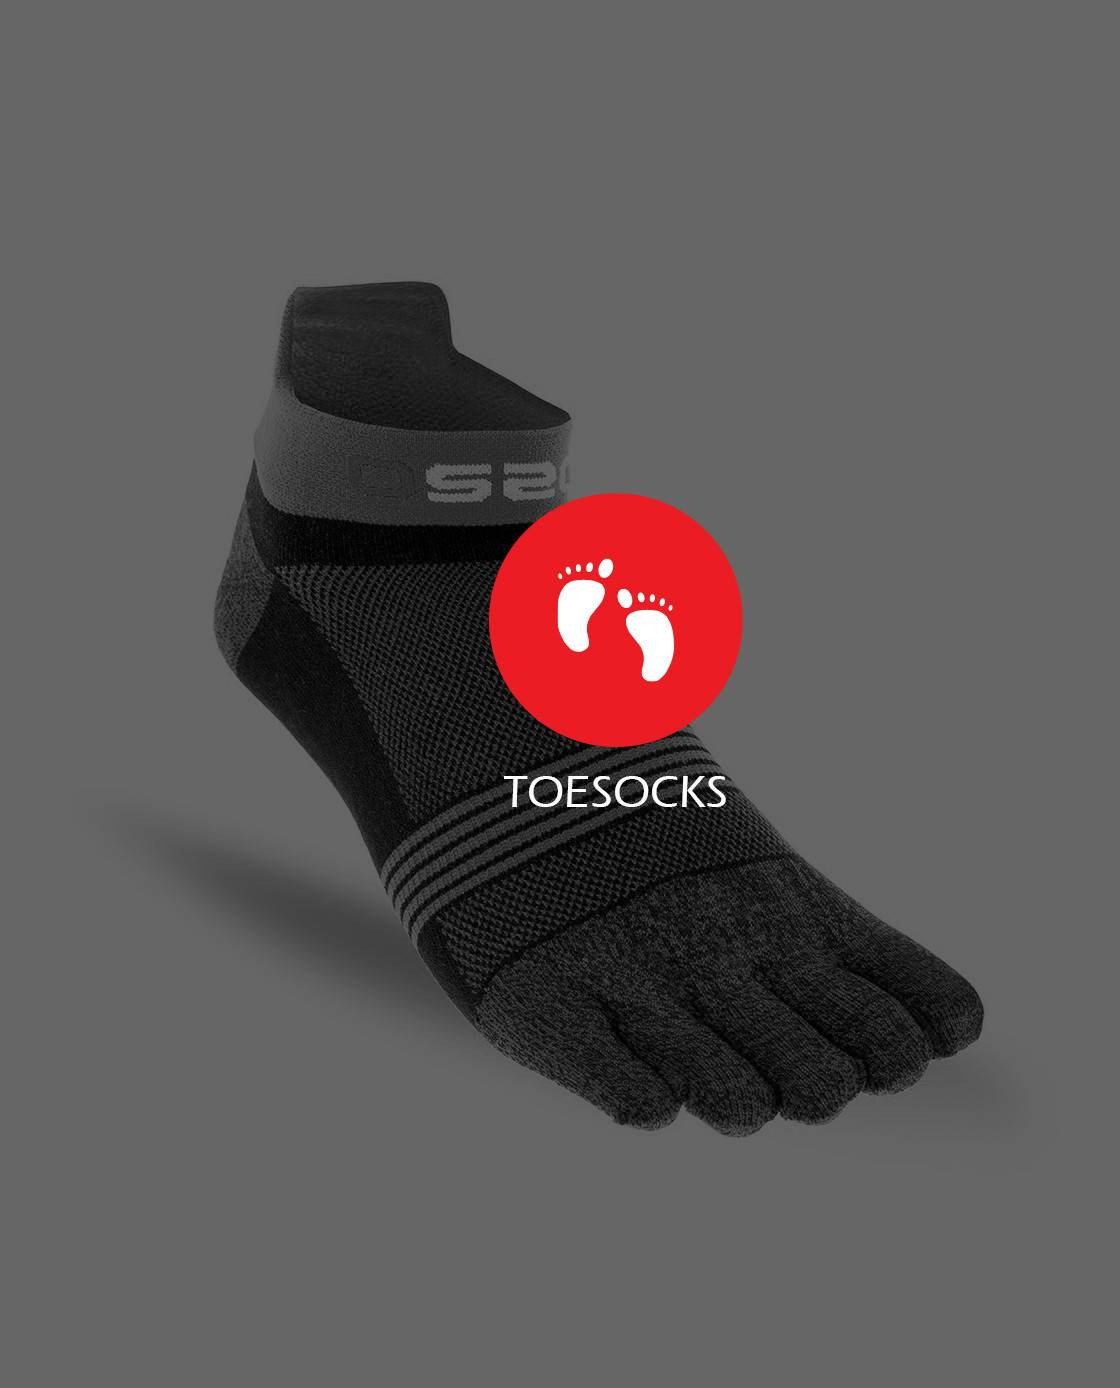 Calcetines de algodón con cinco dedos para hombre y niño, calcetín de  compresión de punto sólido, cálido, para viaje, deporte, Fitness, marca  Sokken